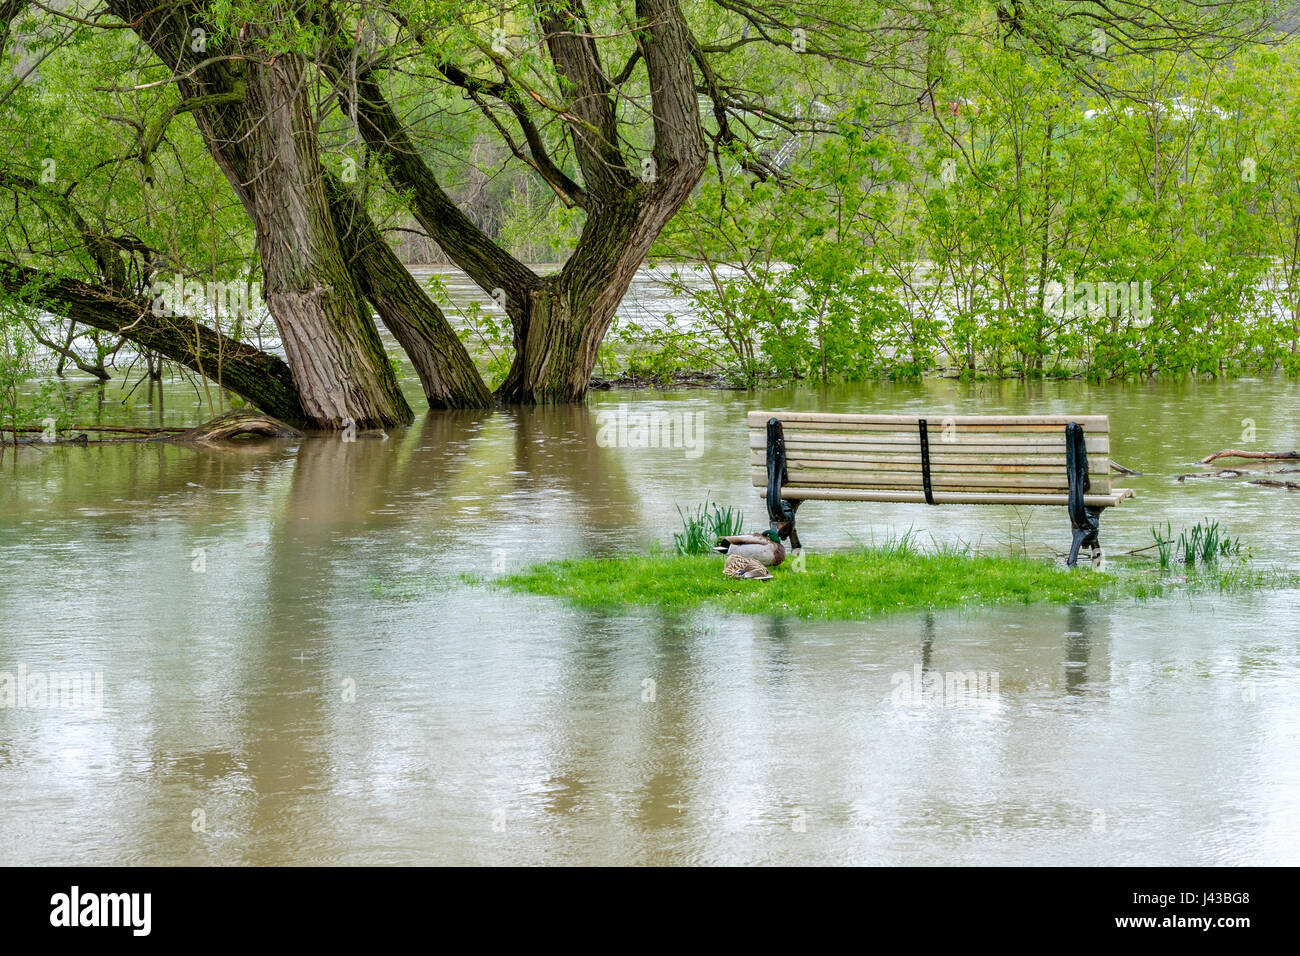 Thames River Überschwemmungen durch heftige Regenfälle im Mai 2017, überfluteten Park, Parkbank, London, Ontario, Kanada. Stockfoto